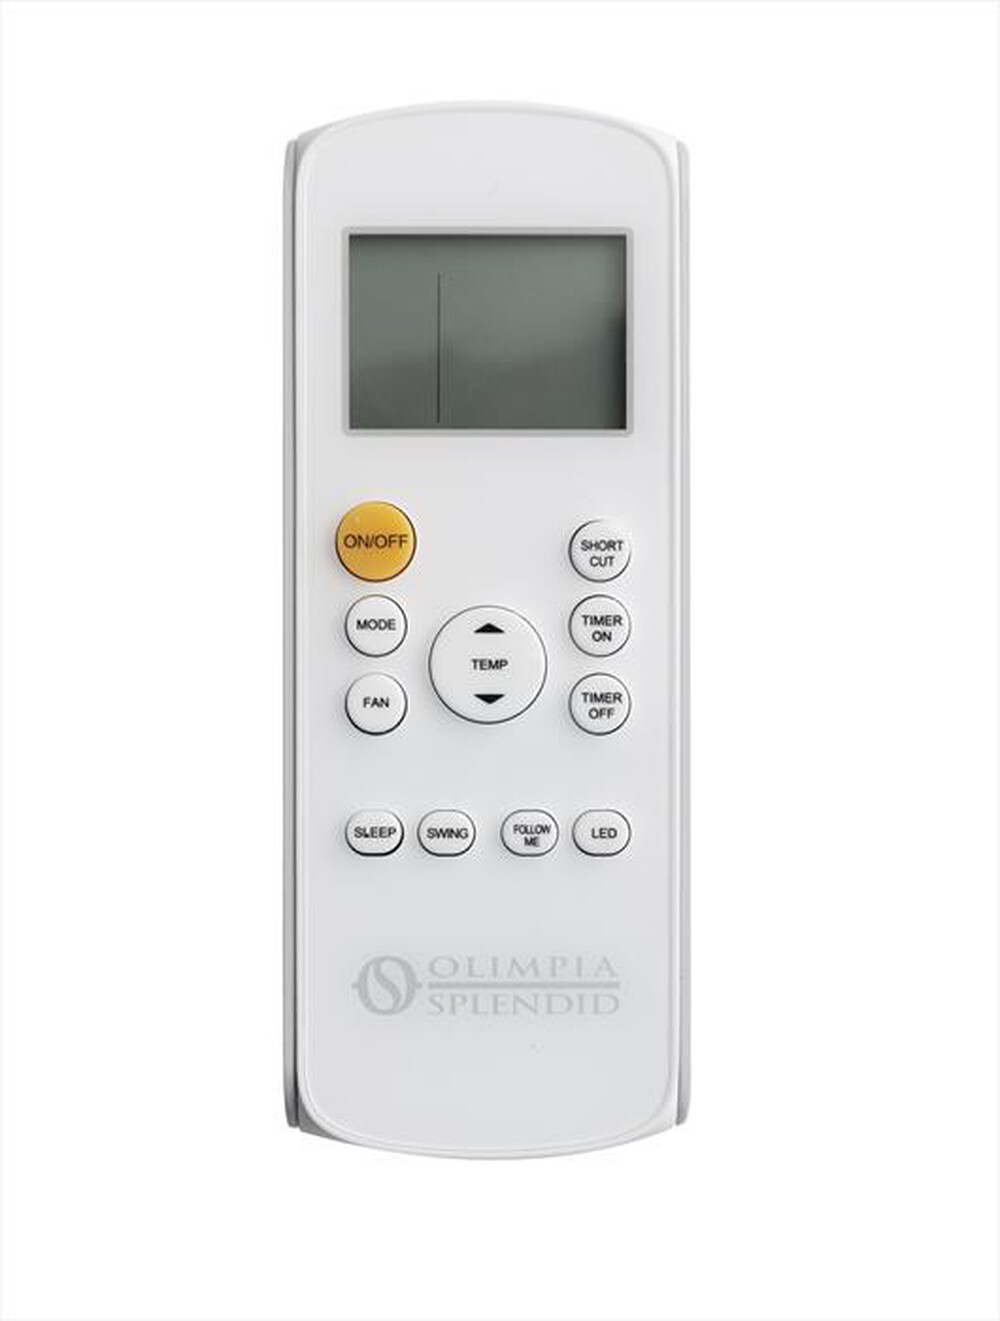 "OLIMPIA SPLENDID - DOLCECLIMA AIR PRO 13 A+ Condizionatore portatile-Bianco"